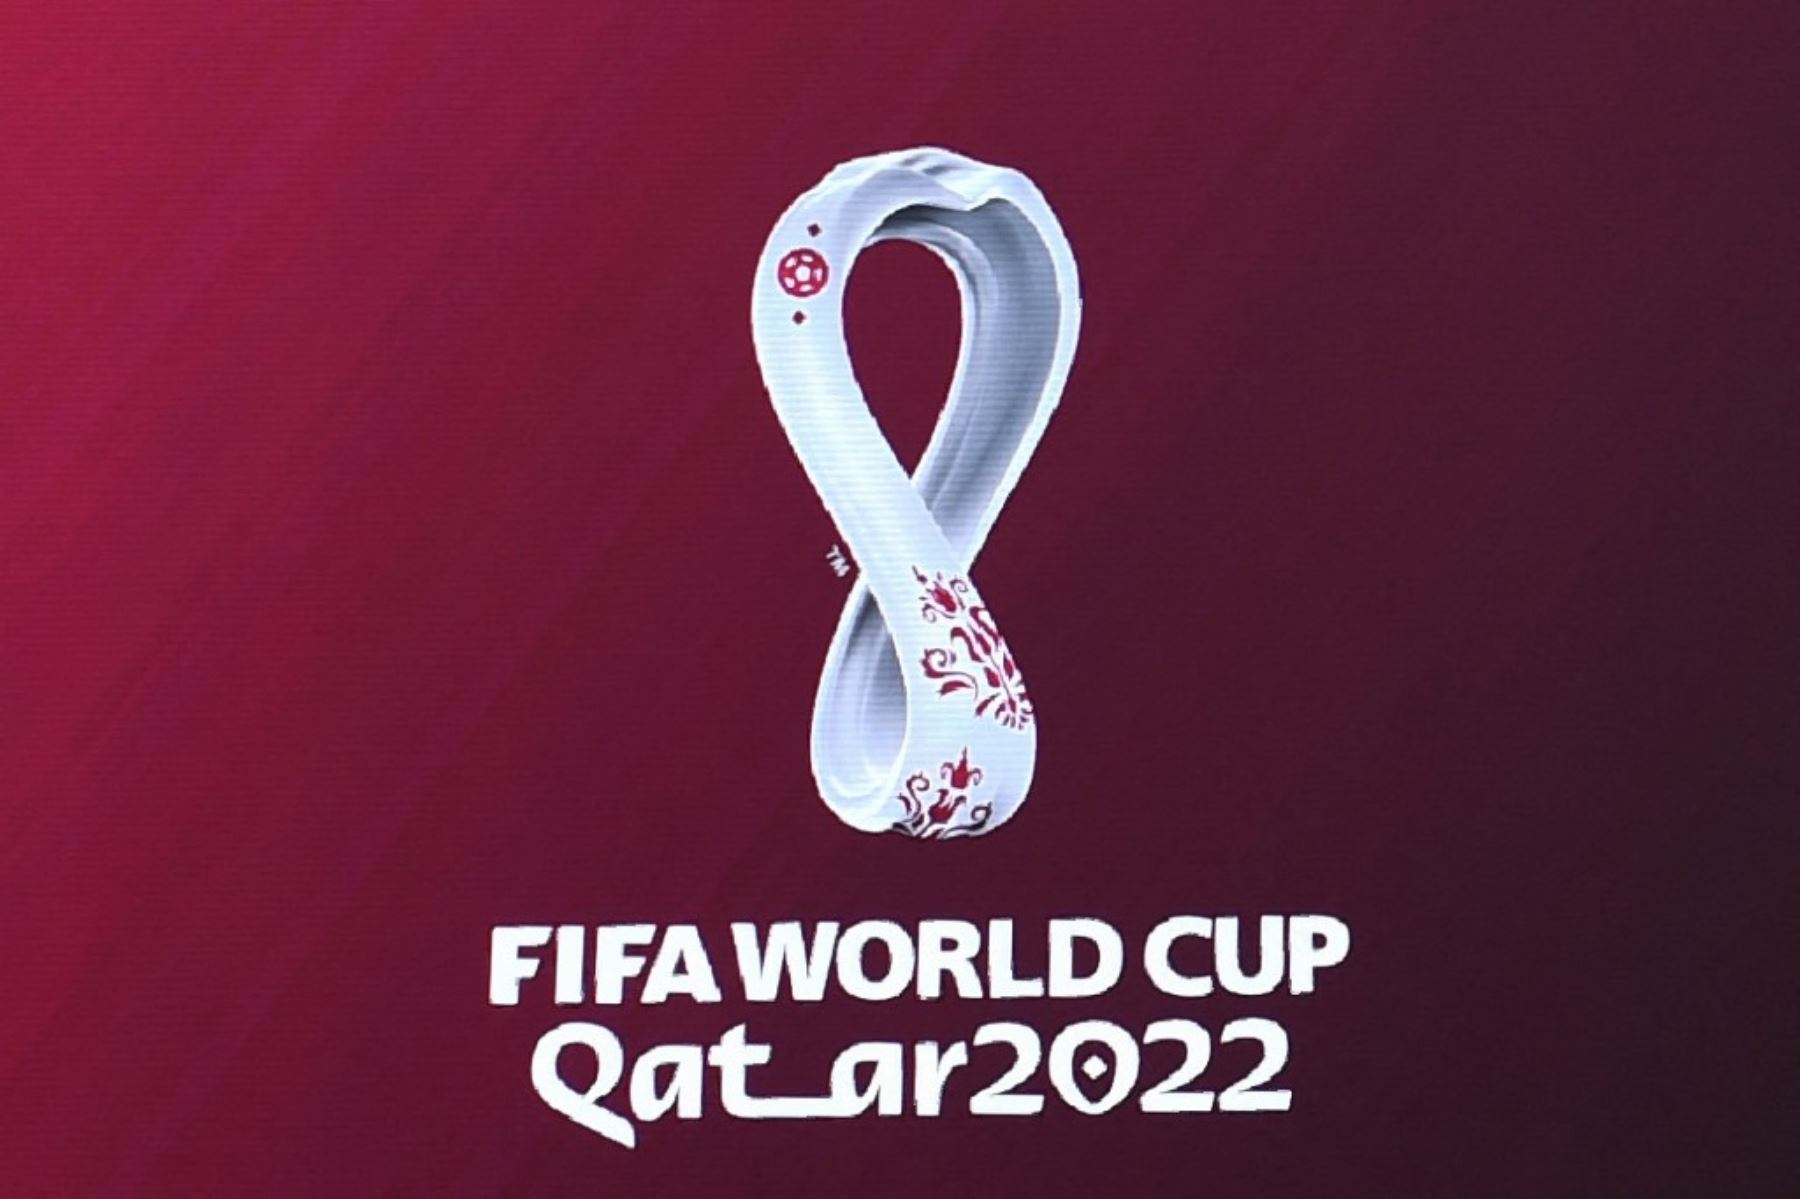 Catar 2022: Ya se vendieron 1,8 millones de entradas para el Mundial